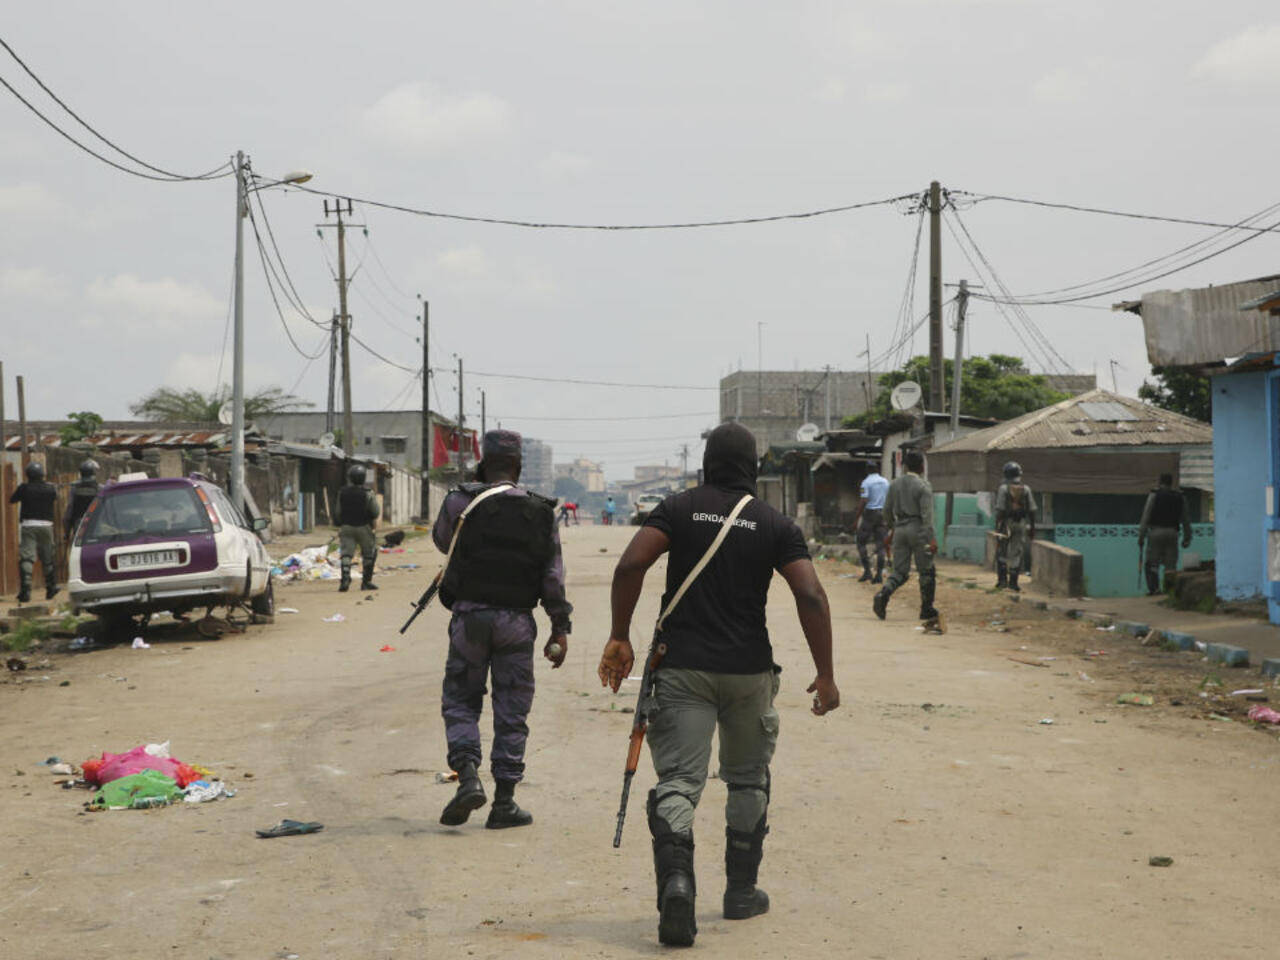 Patrolmen In Gabon Background